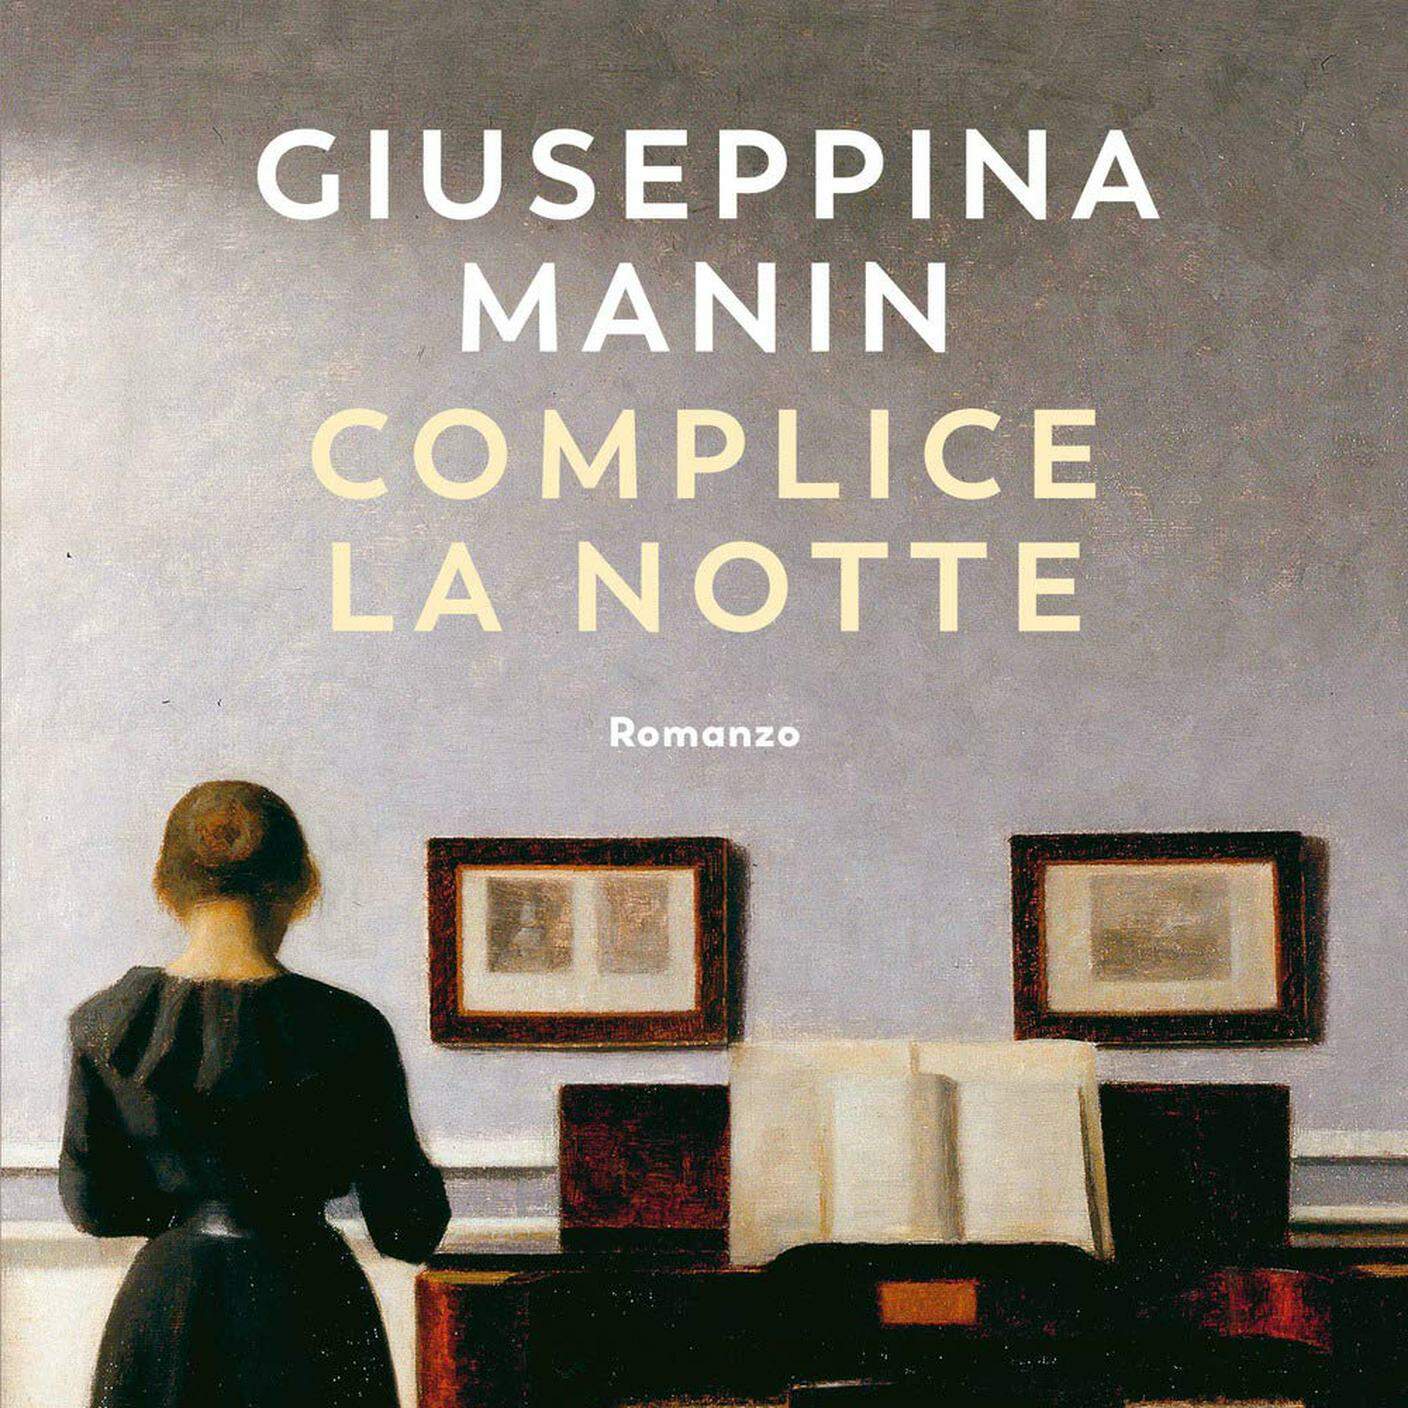 Giuseppina Manin, "Complice la notte", Guanda (dettaglio copertina)